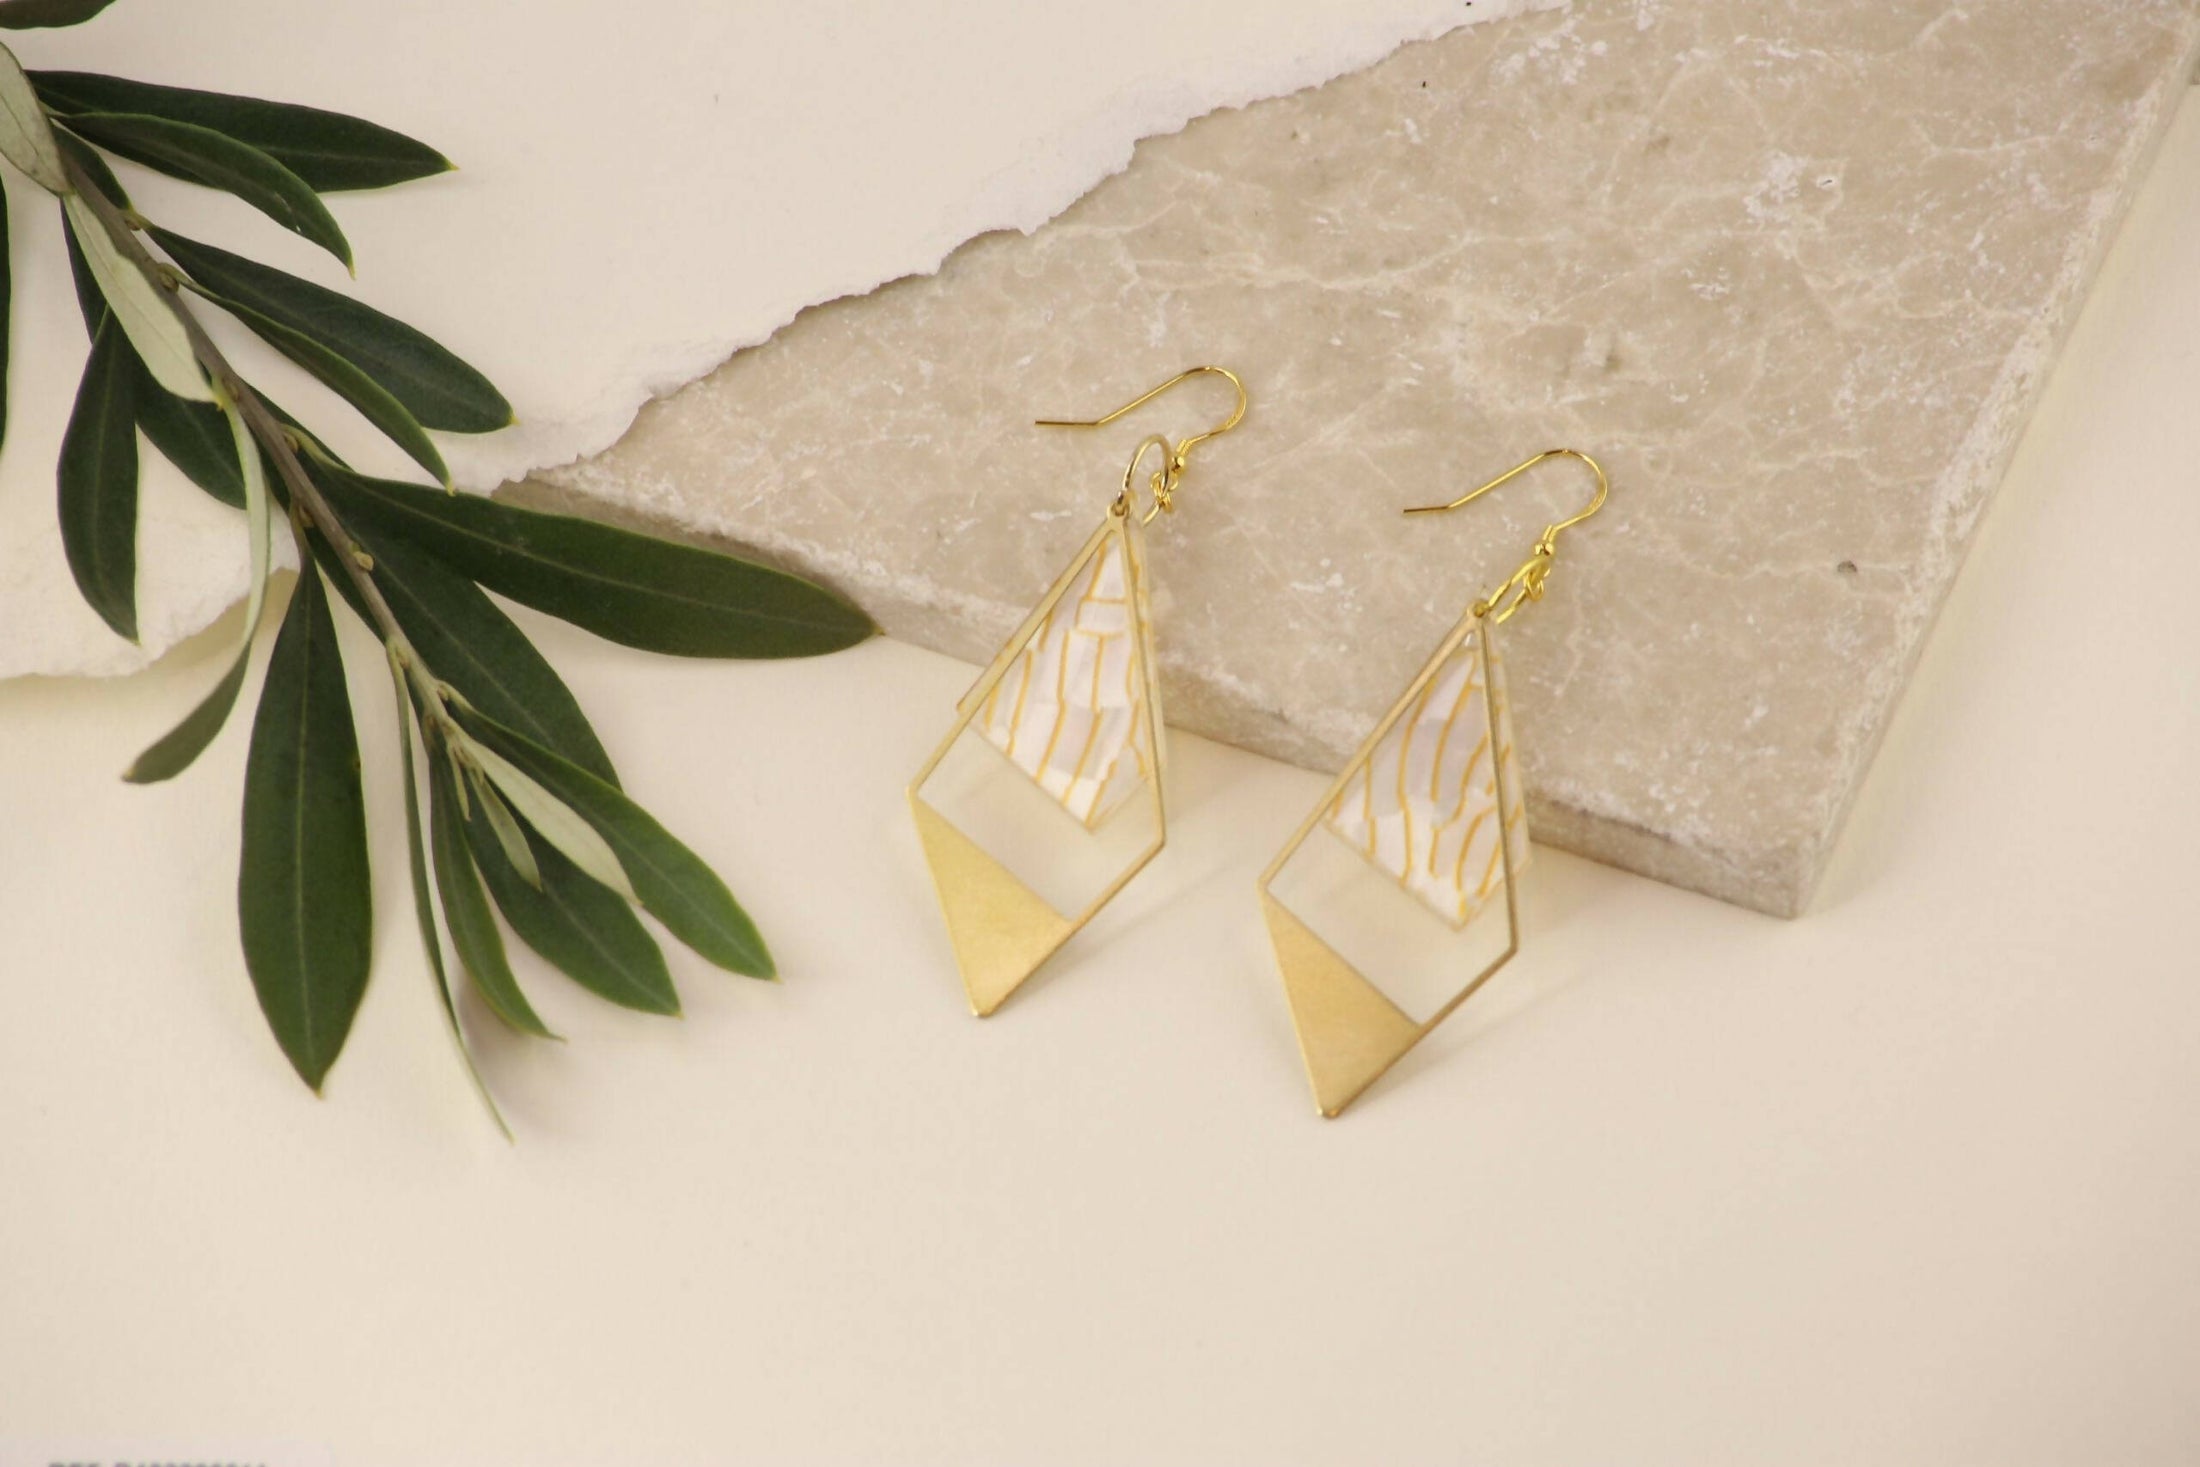 doris-statement-earrings-lemon-drizzle-acrylic-gold-vermeil-dangle-earrings-637a91fe-scaled (1)